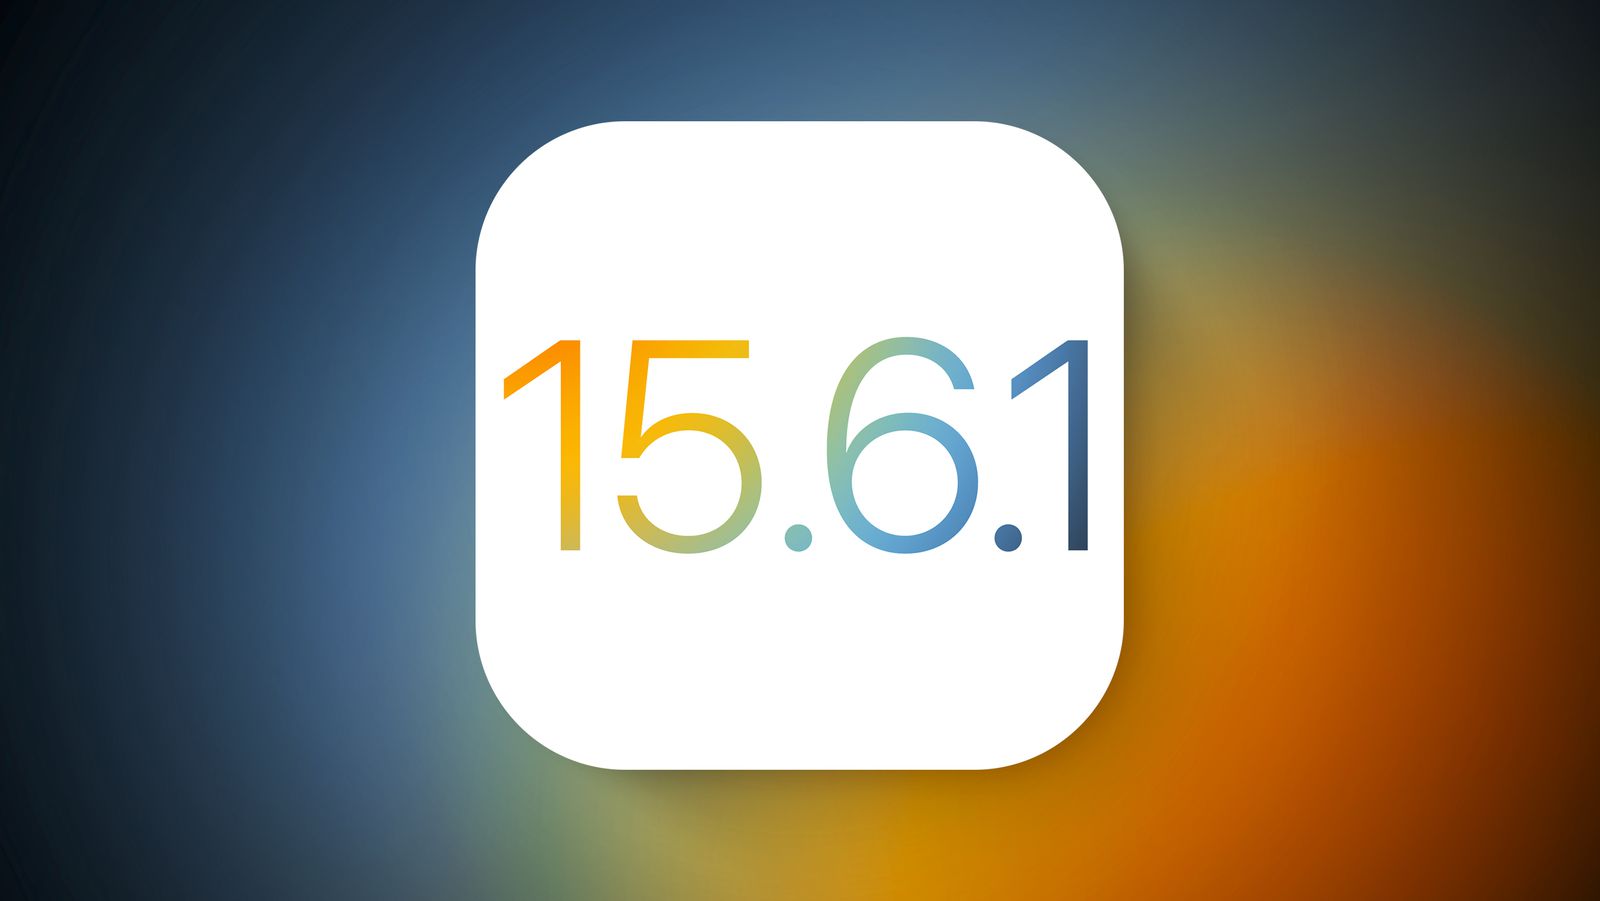 Warten auf iOS 16: Apple veröffentlicht iOS 15.6.1 für iPhone-Nutzer